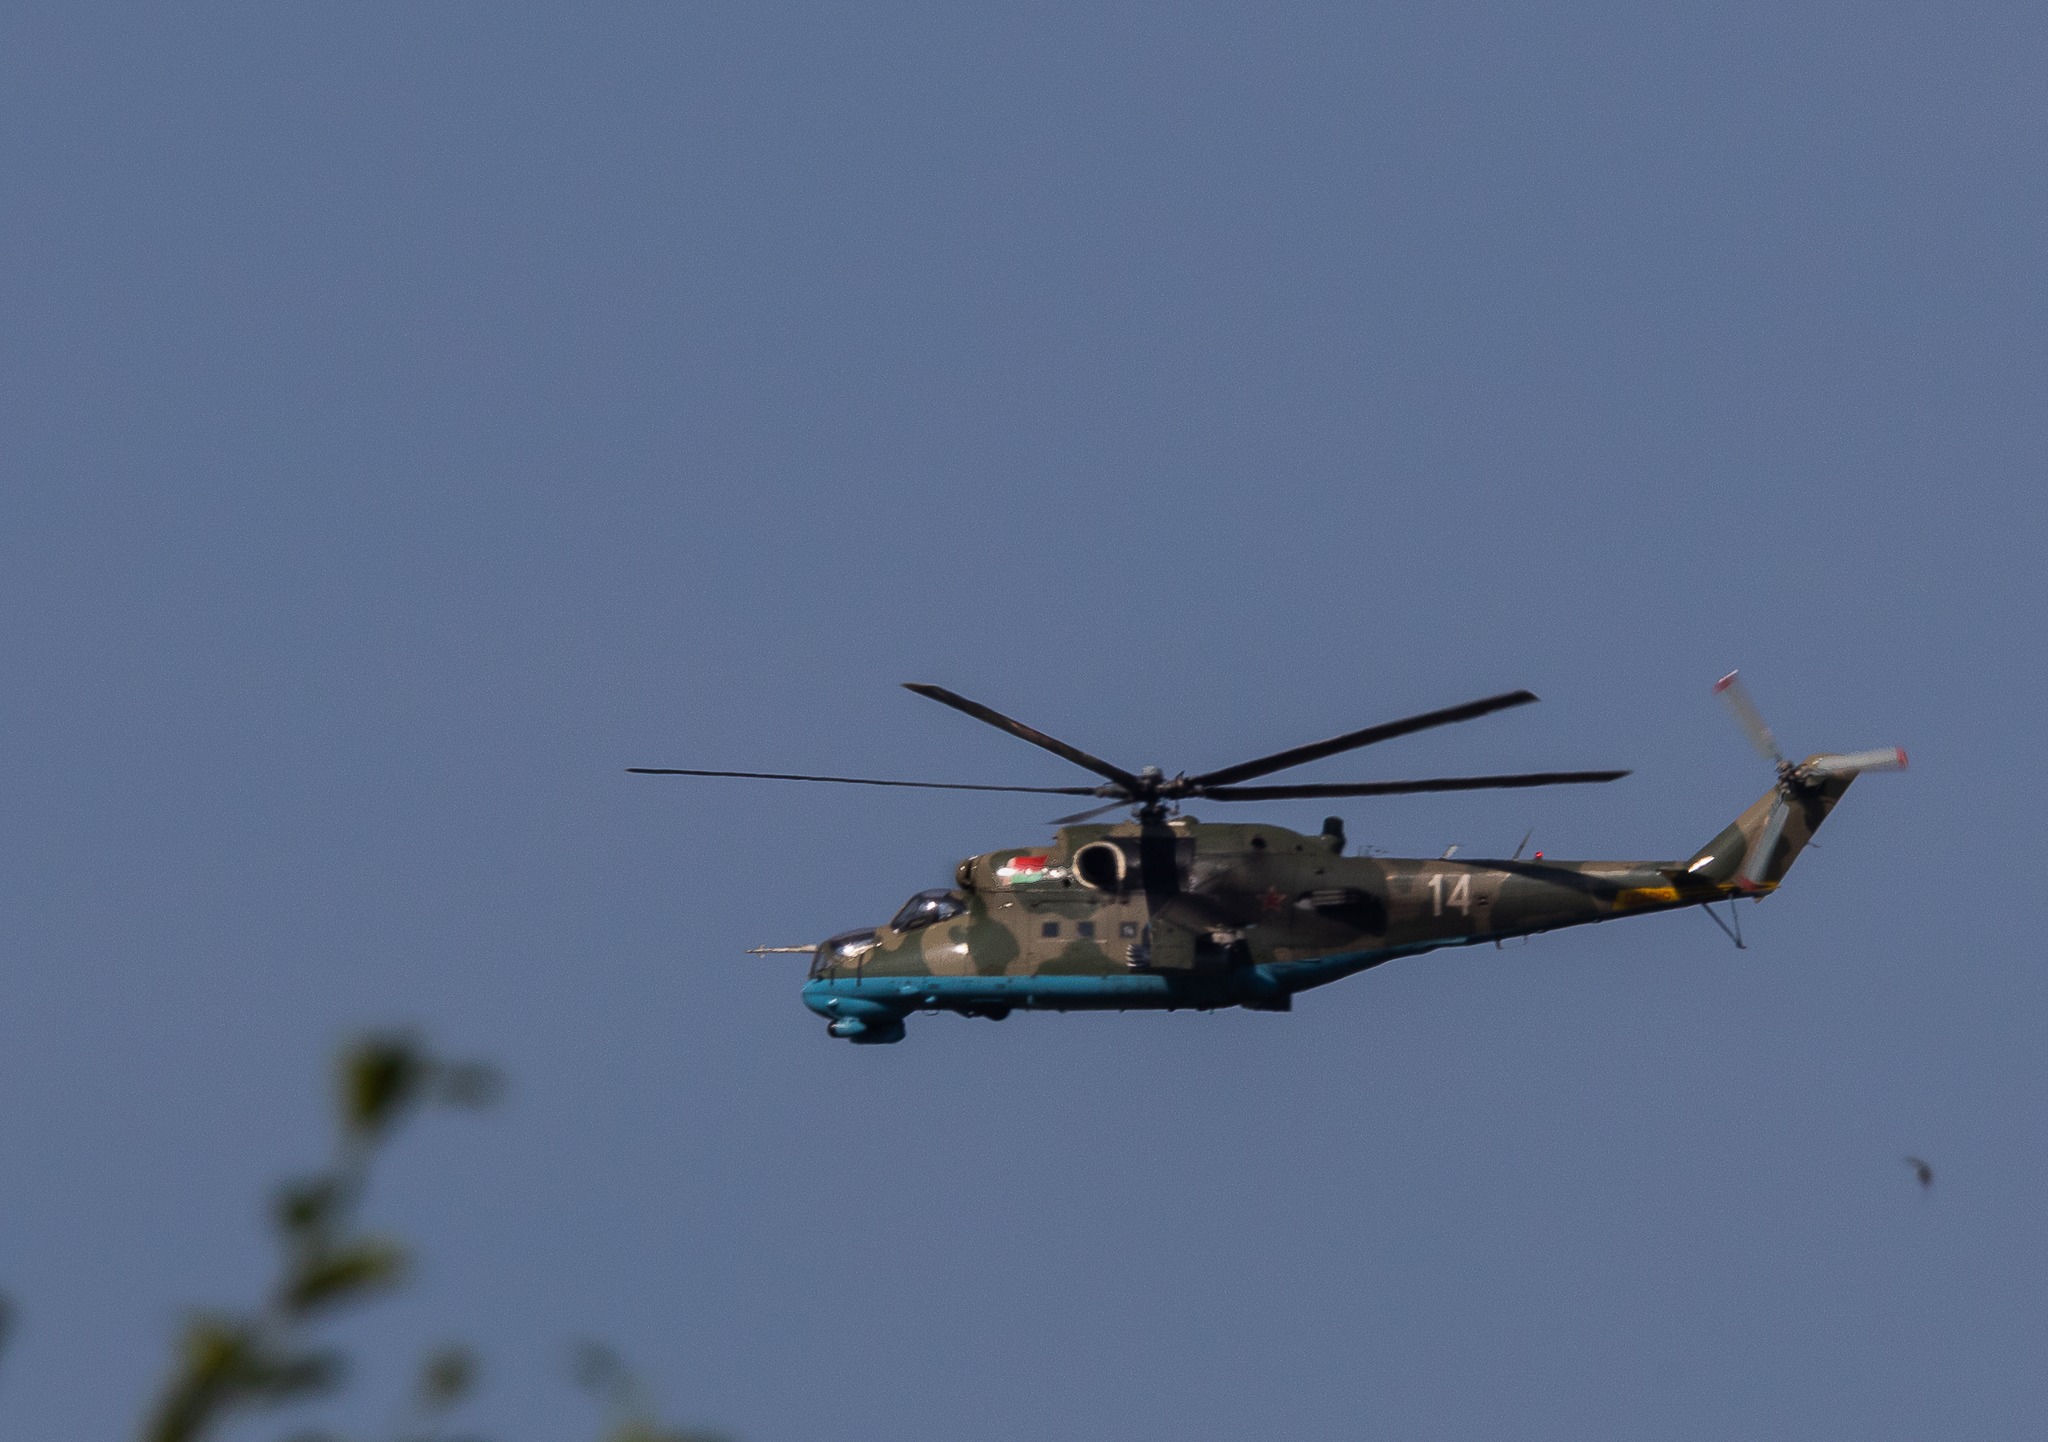 Польша заявила, что белорусские вертолеты нарушили ее воздушное пространство. В Минске все отрицают